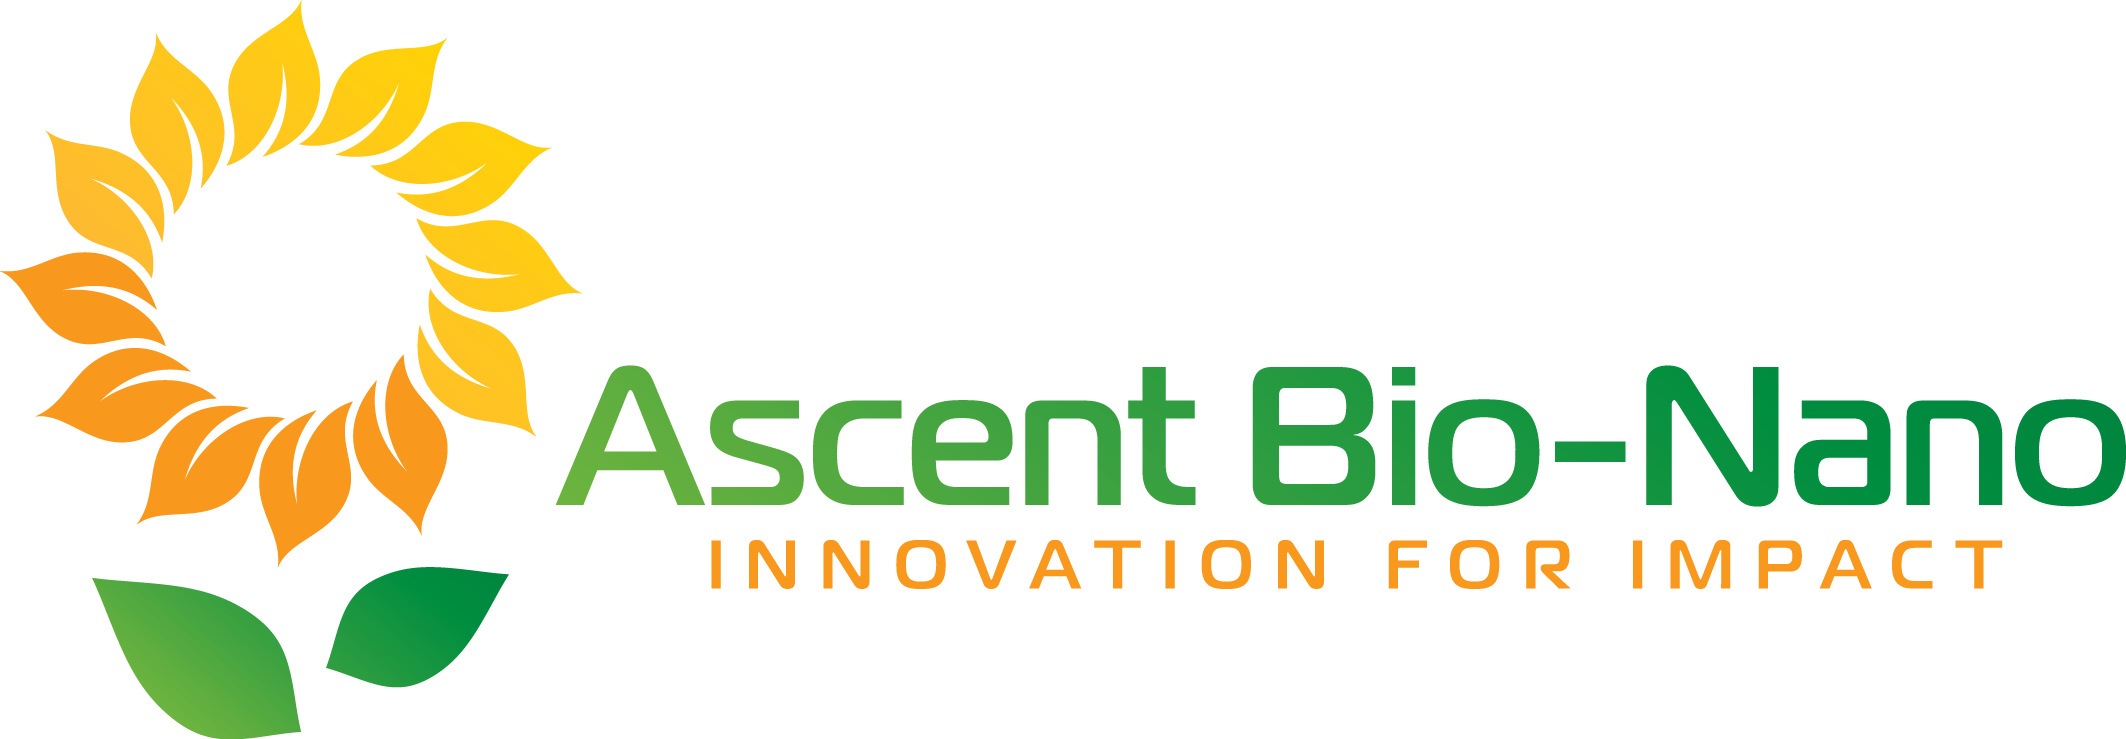 Ascent Bio-Nano Technologies